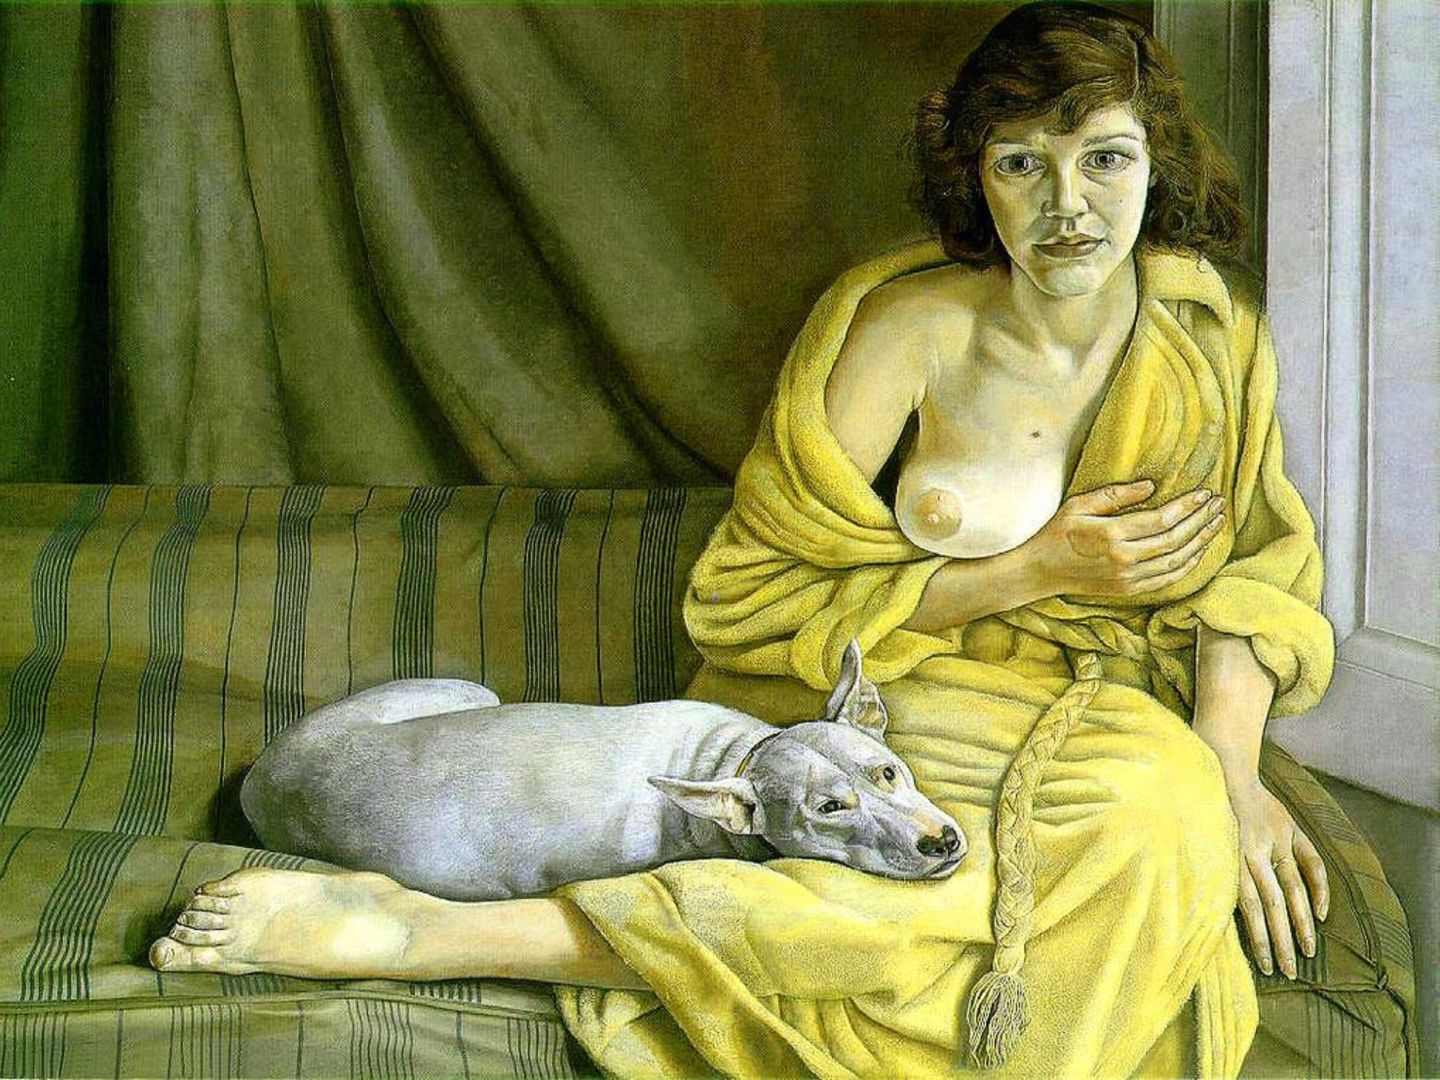 женщина в халате с голой грудью сидит на диване с питбулем, живописная работа прошлого века